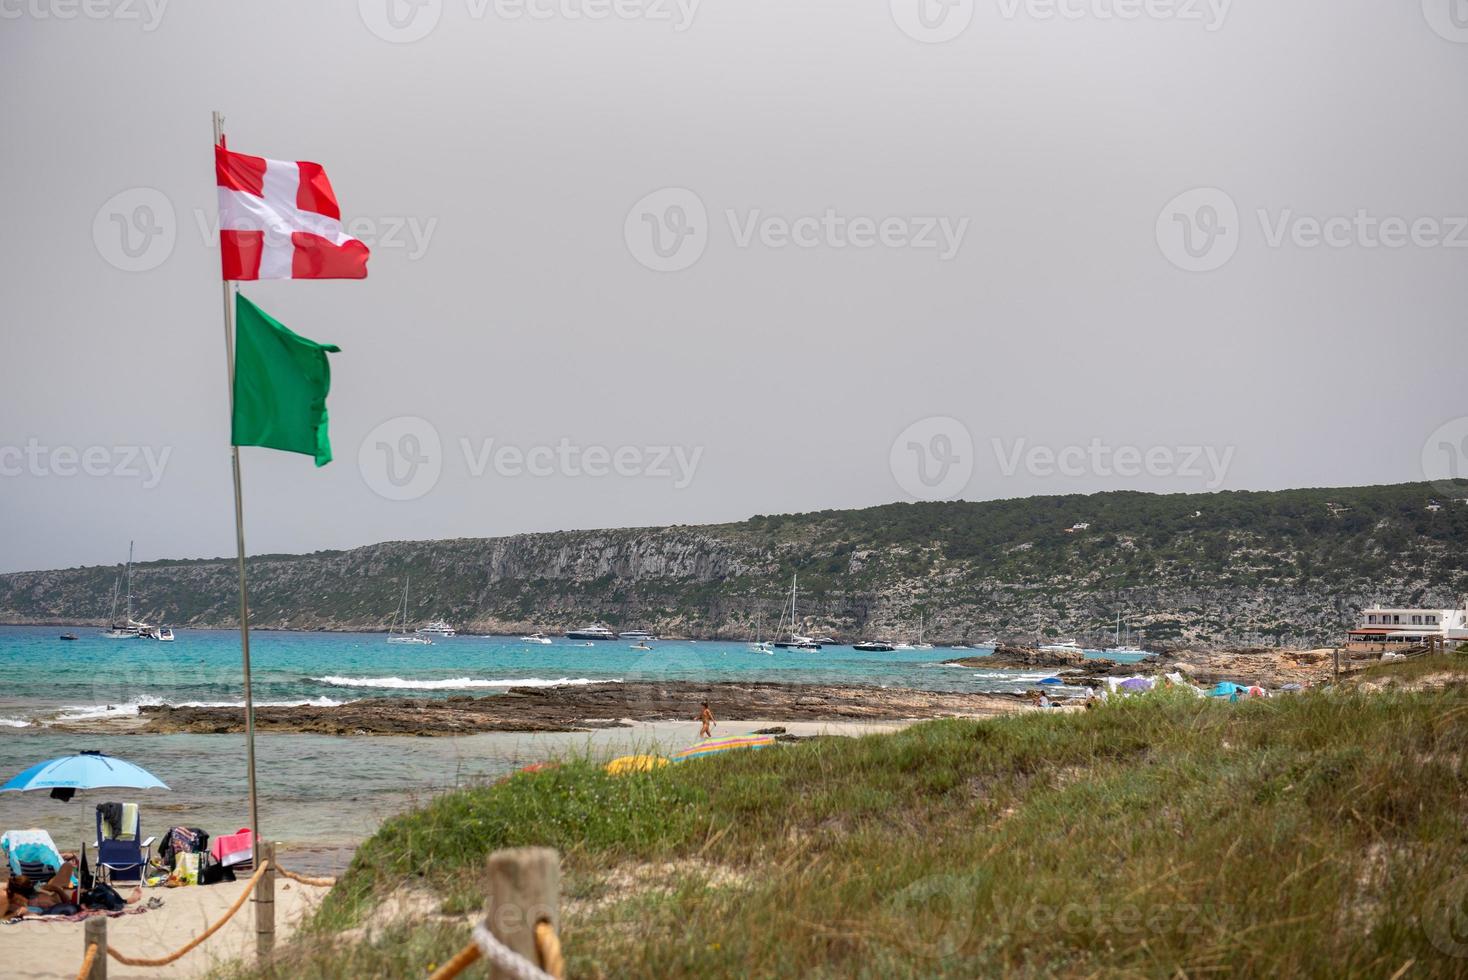 Fischerdorf es Calo de Sant Agusti auf der Insel Formentera foto